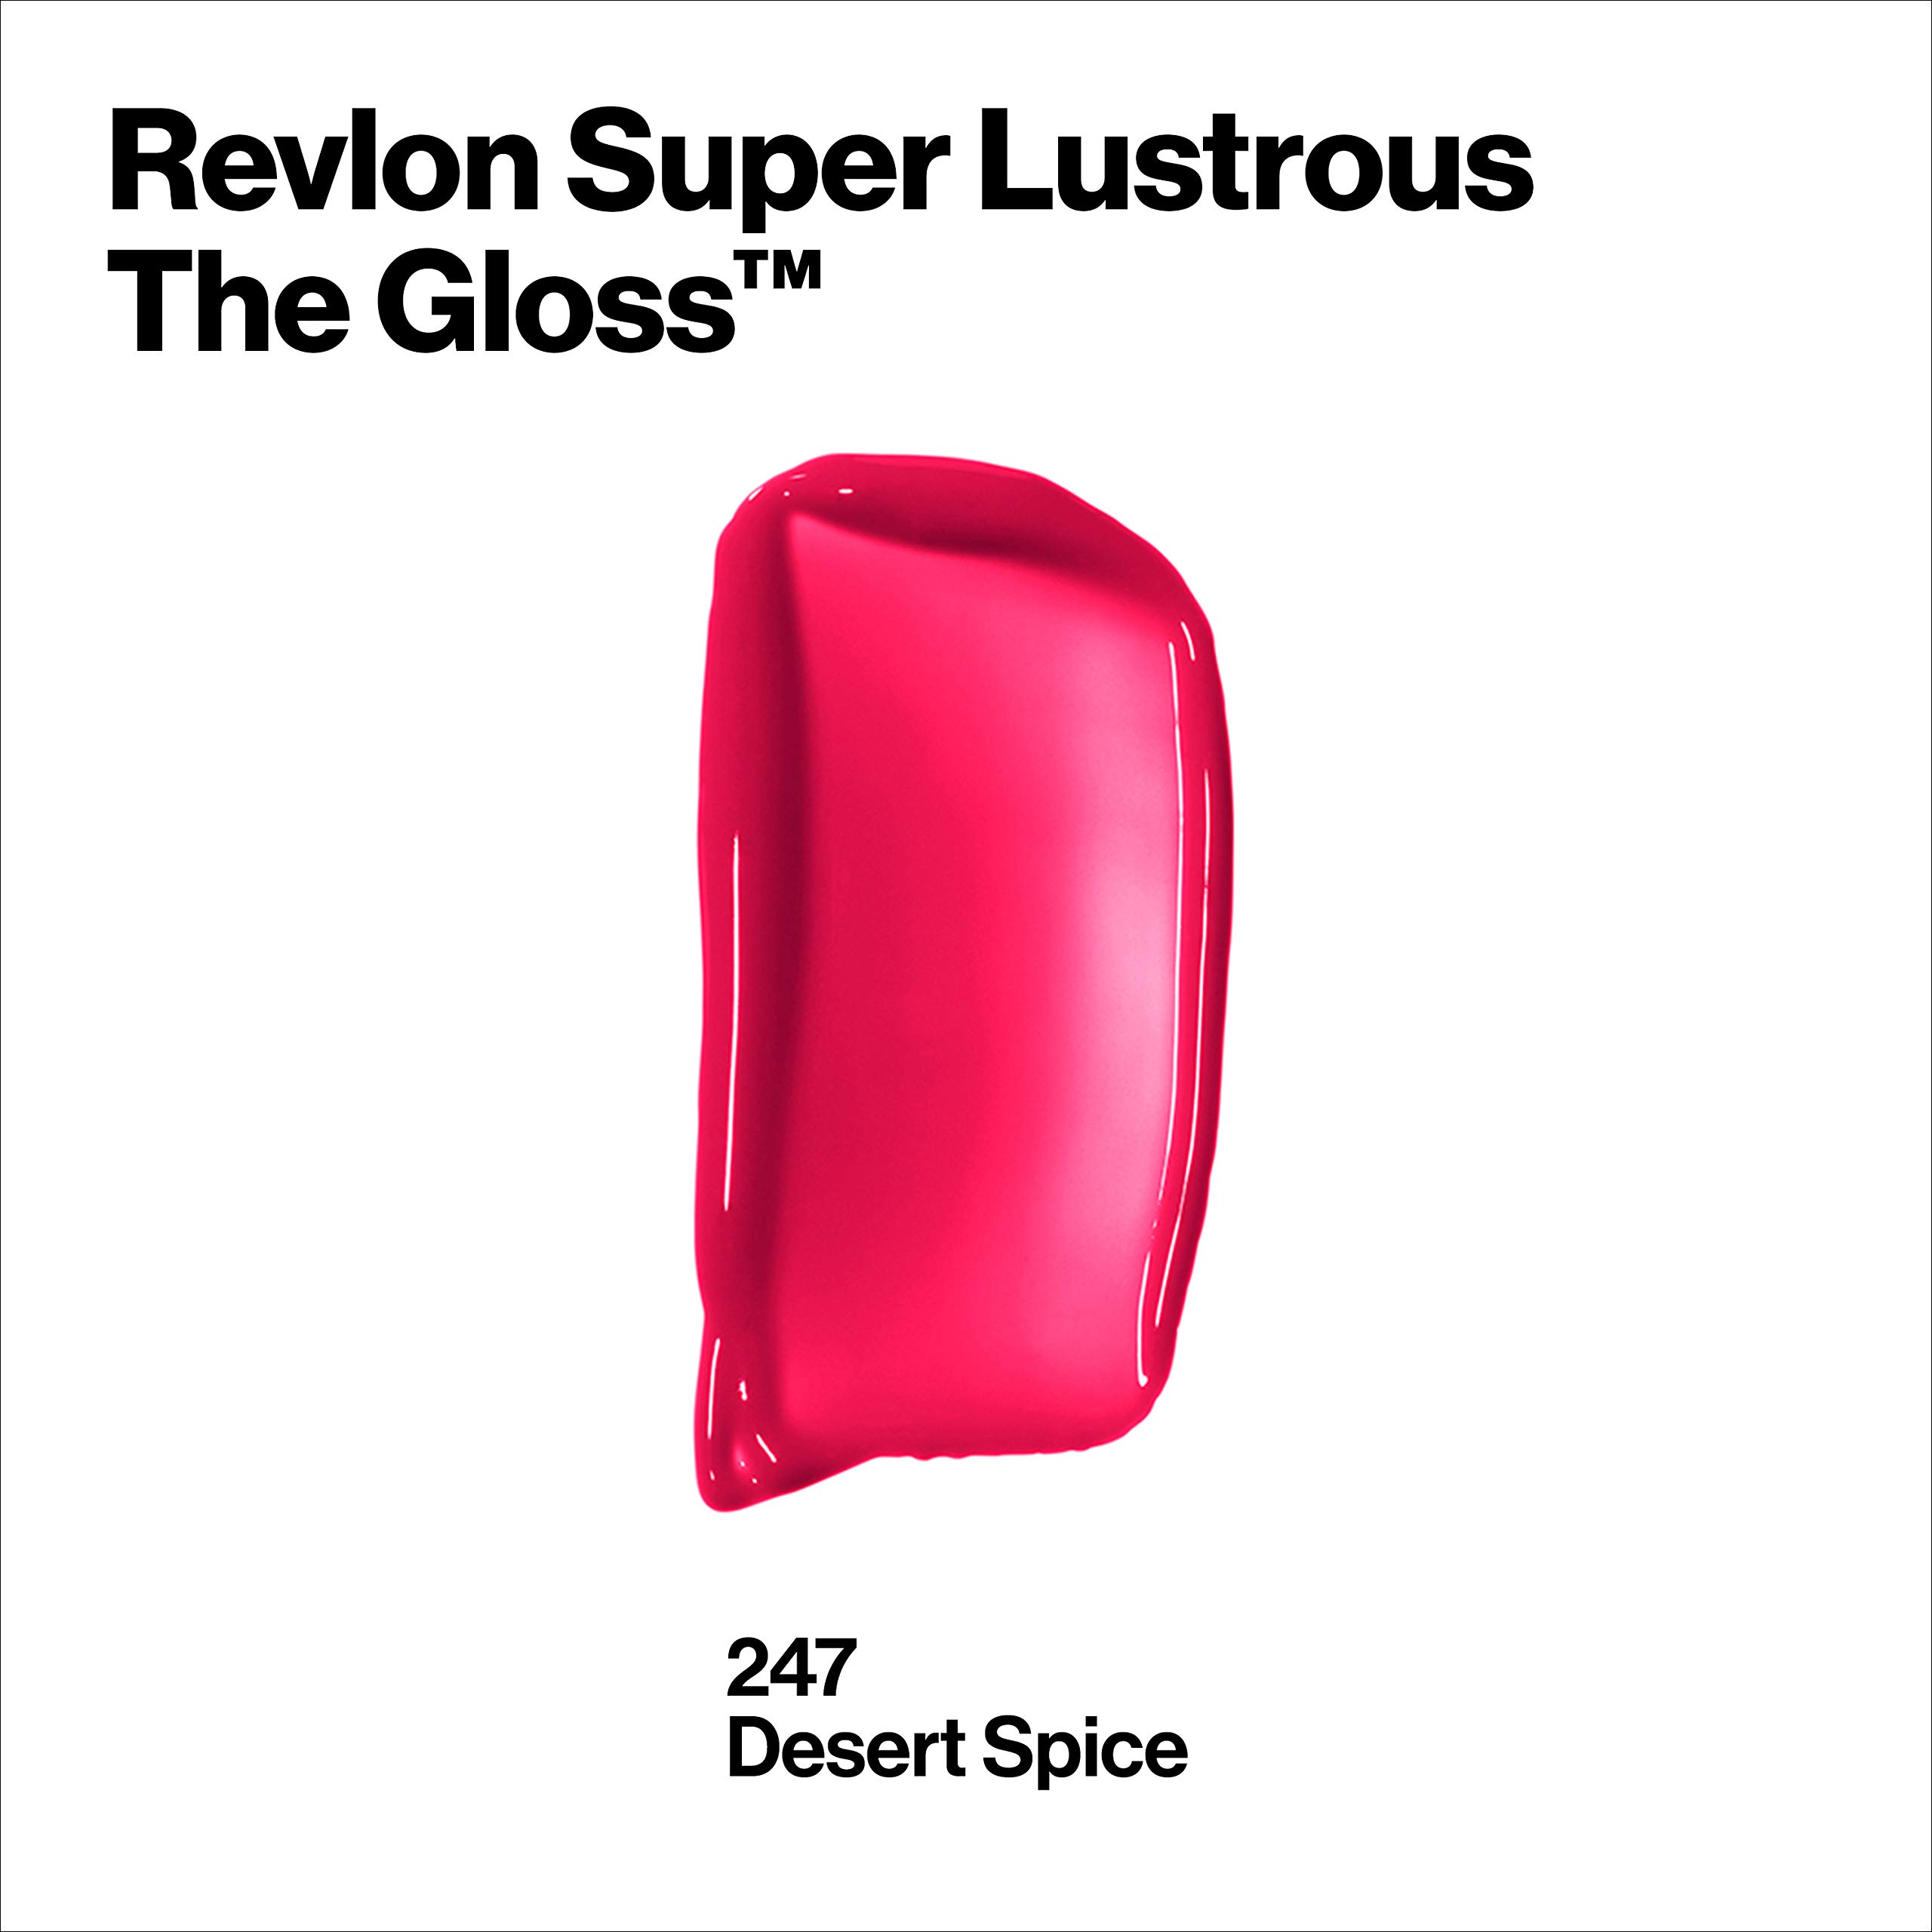 Revlon Lip Gloss, Super Lustrous The Gloss, Non-Sticky, High Shine Finish, 247 Desert Spice, 0.13 Oz